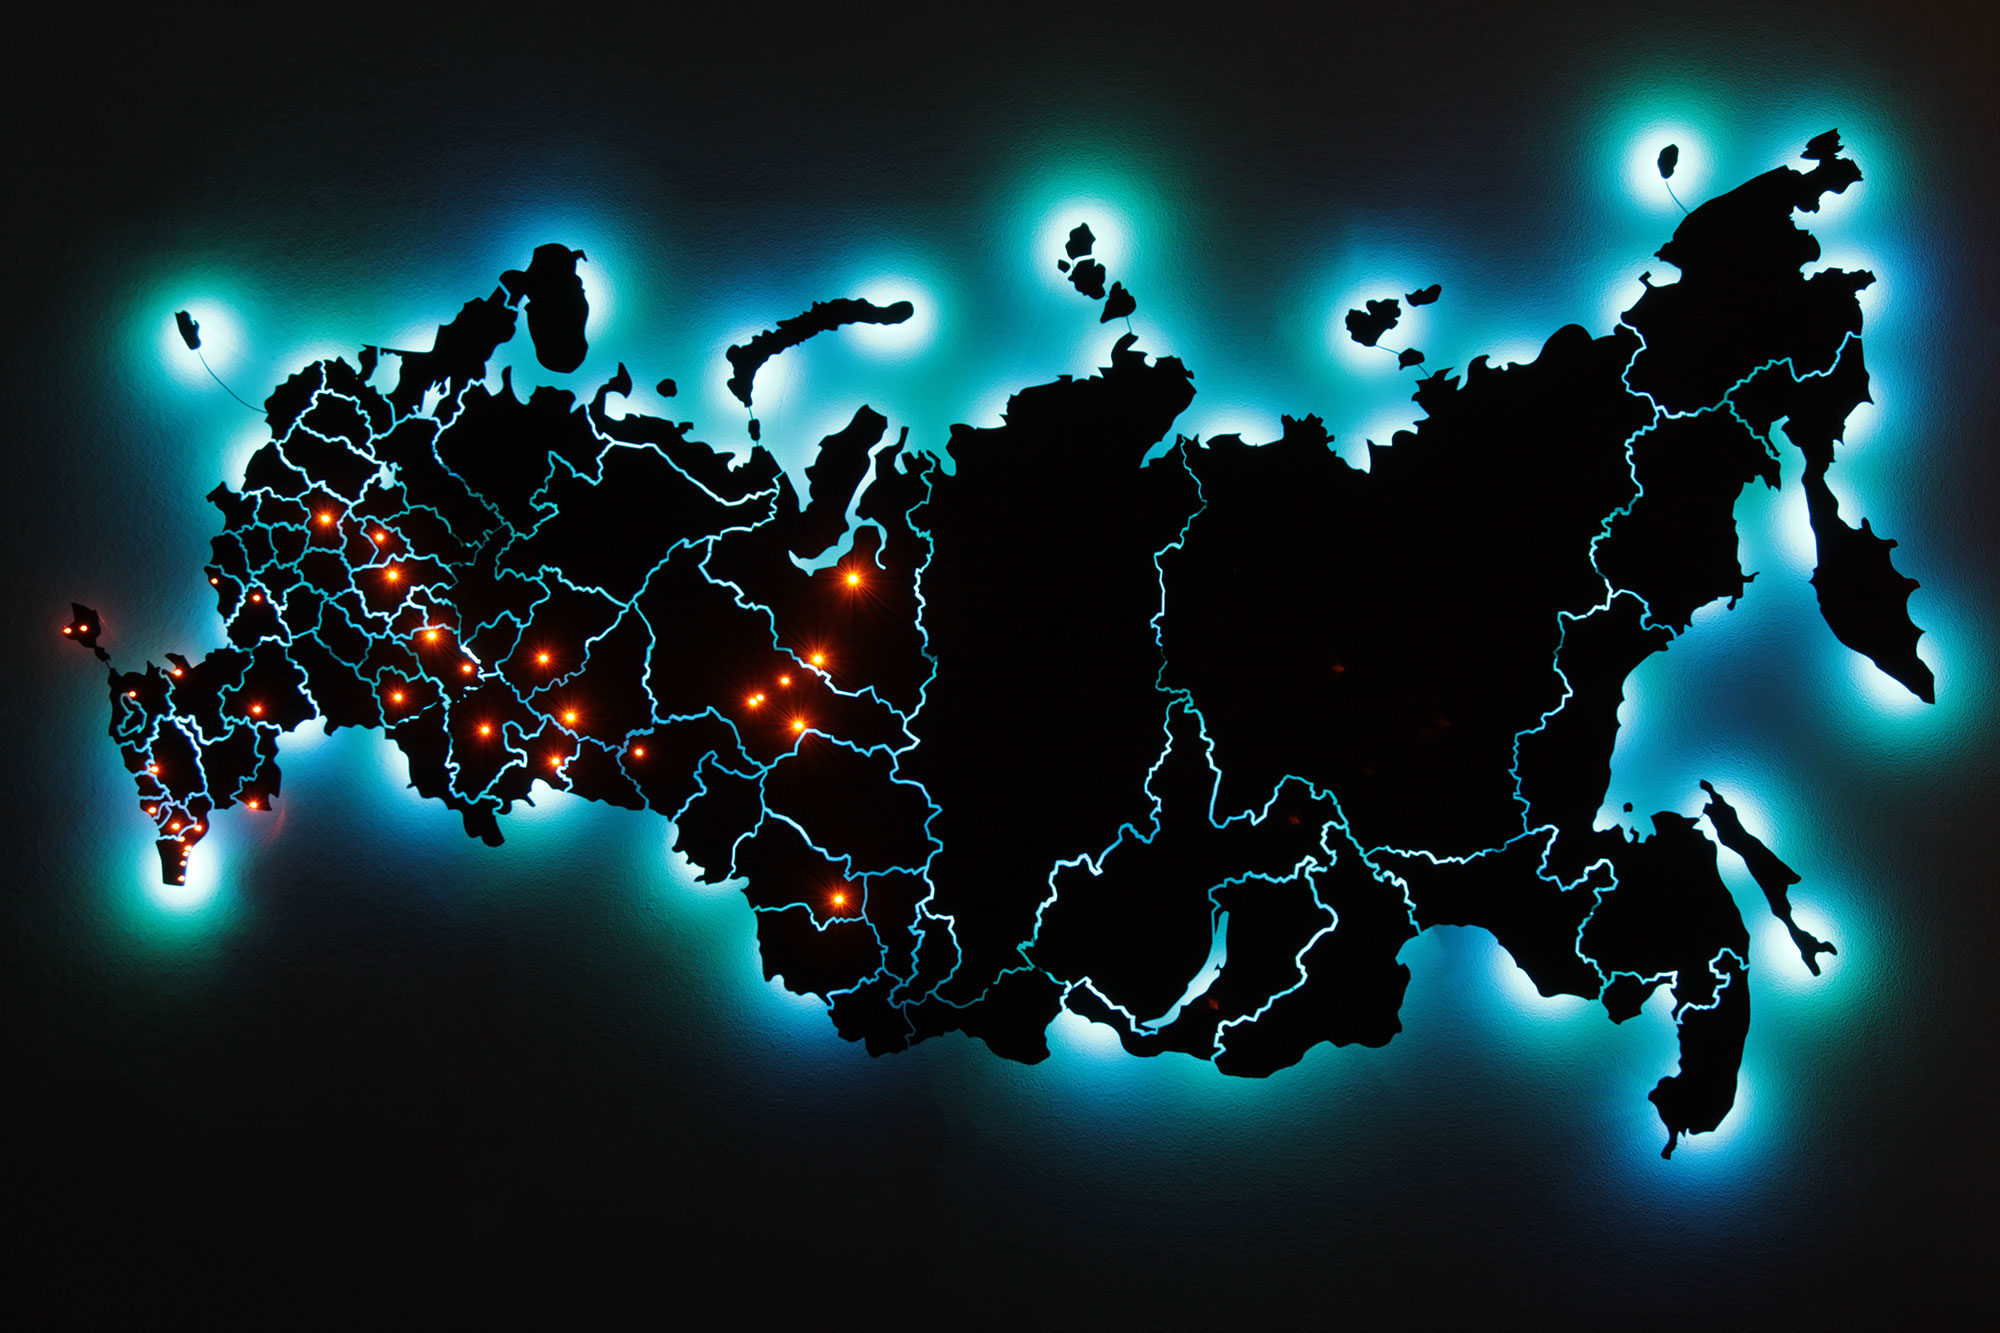 Интернет по всей россии